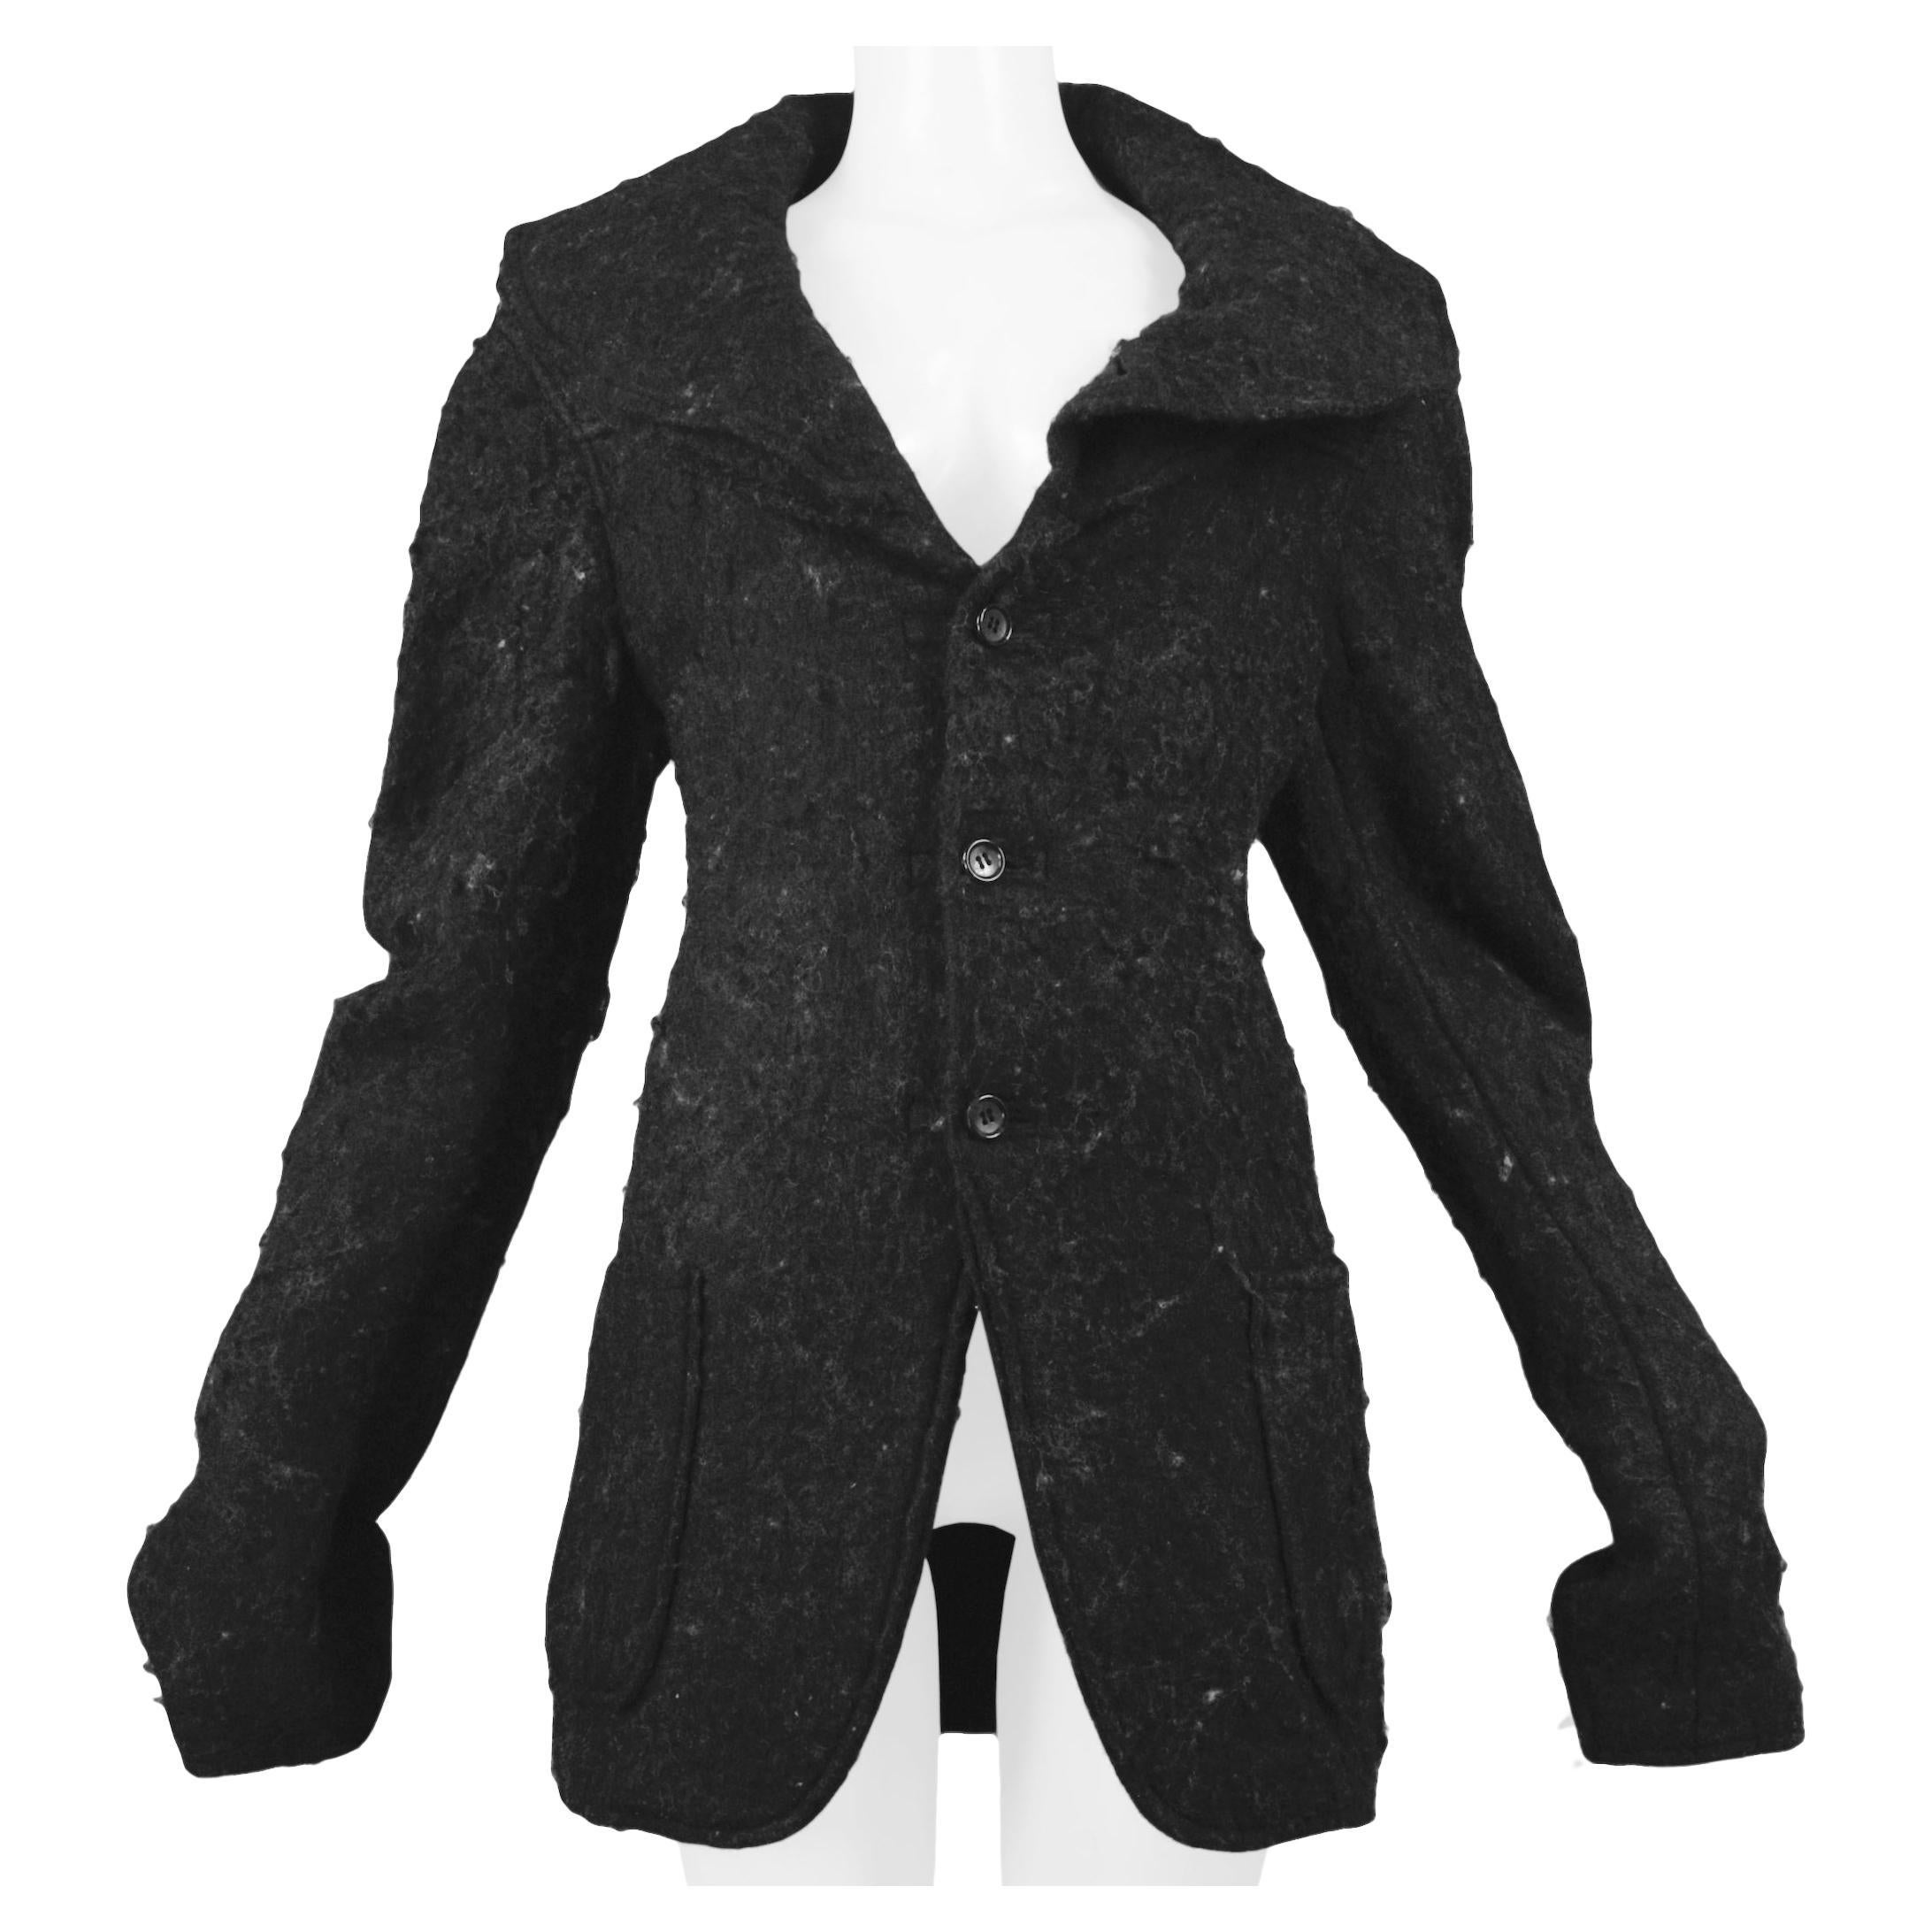 Vintage Boiled Wool Jacket - 5 For Sale on 1stDibs